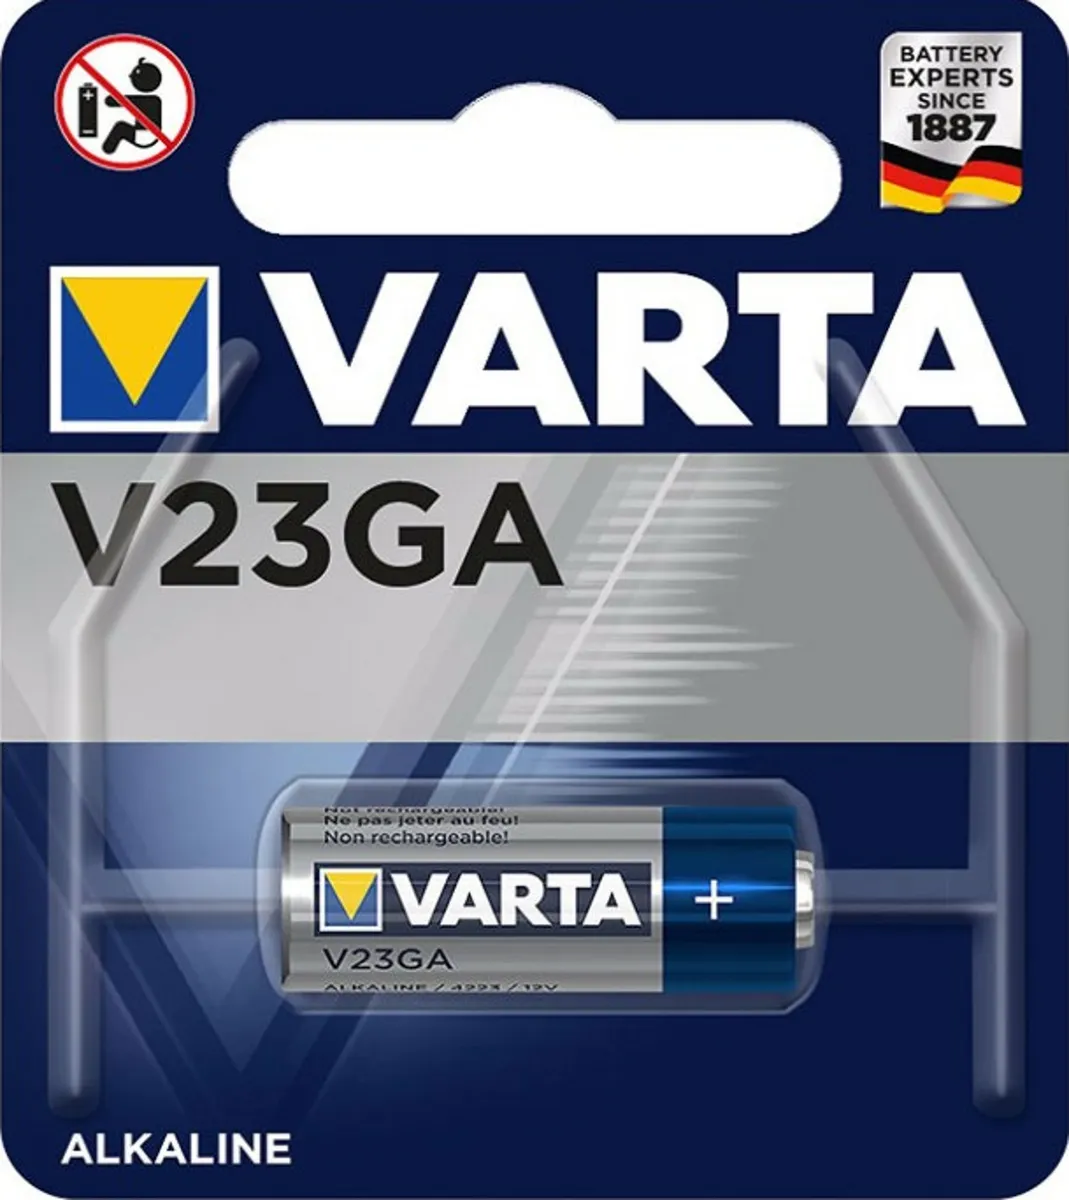 Koop uw Varta Battery V23GA 12V bij SBI